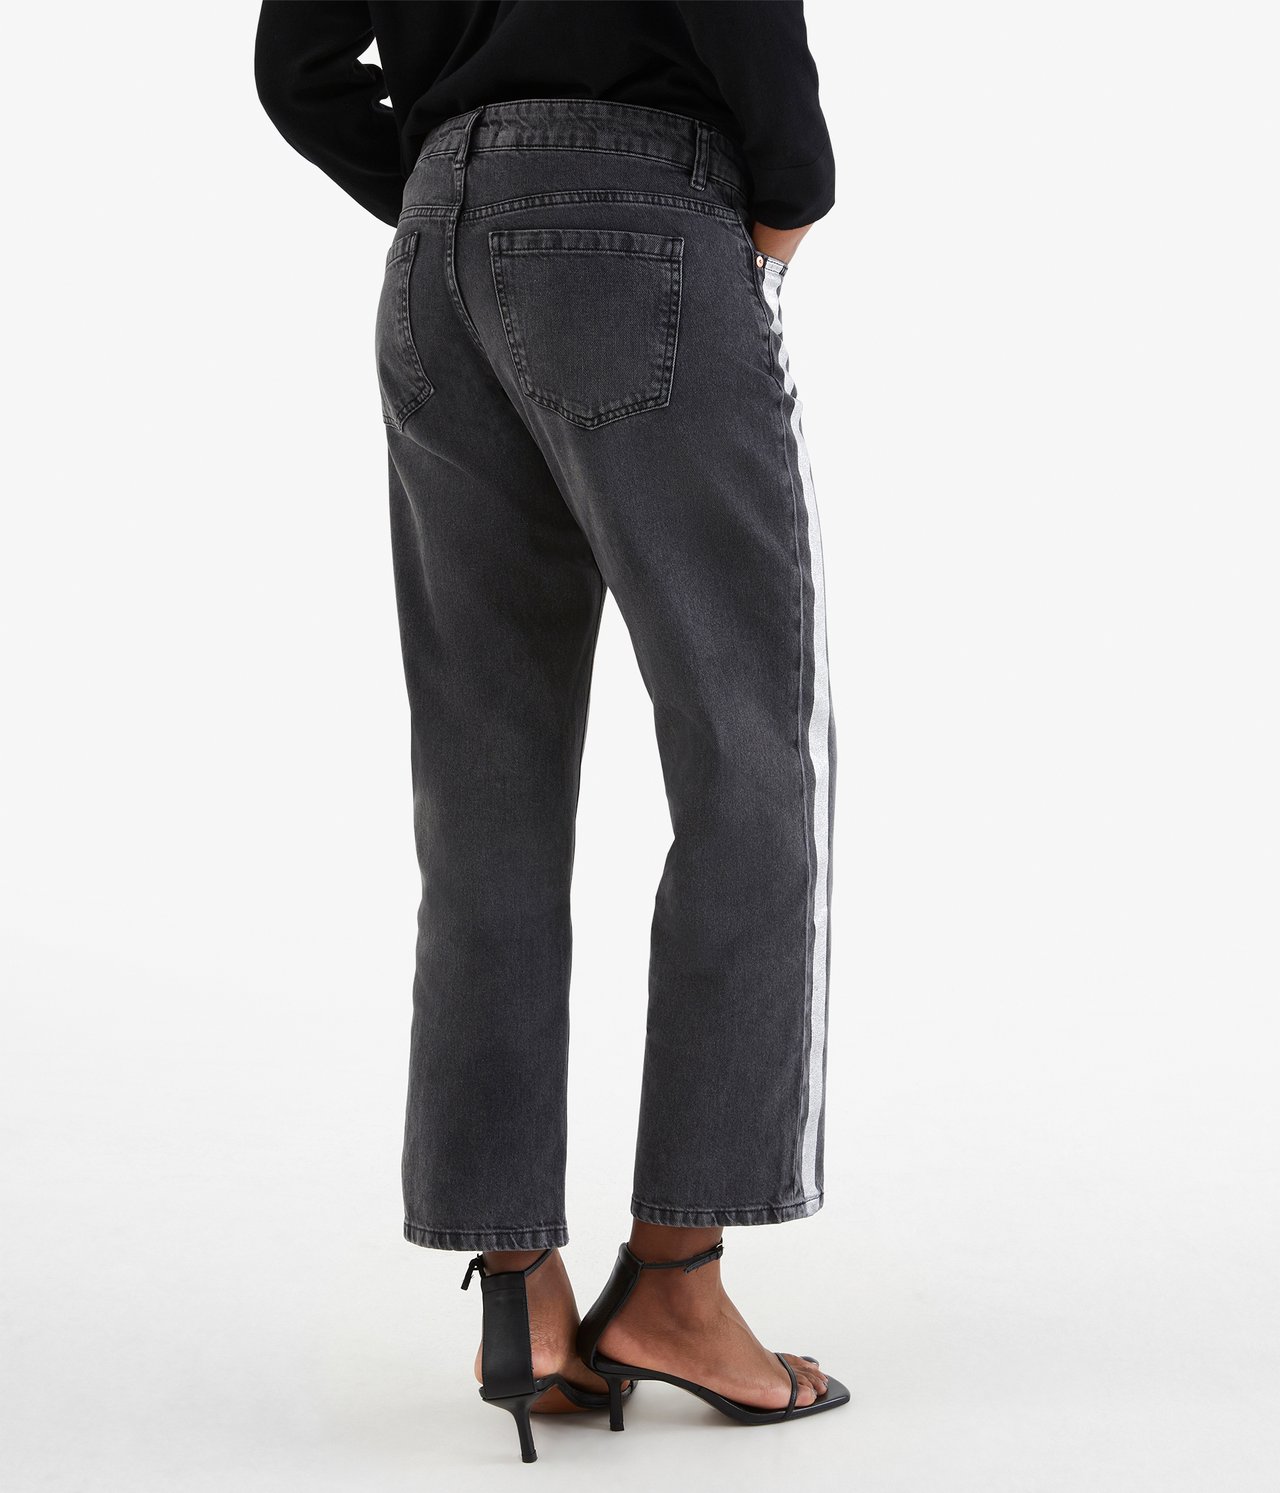 Kort jeans med striper - Svart - 5